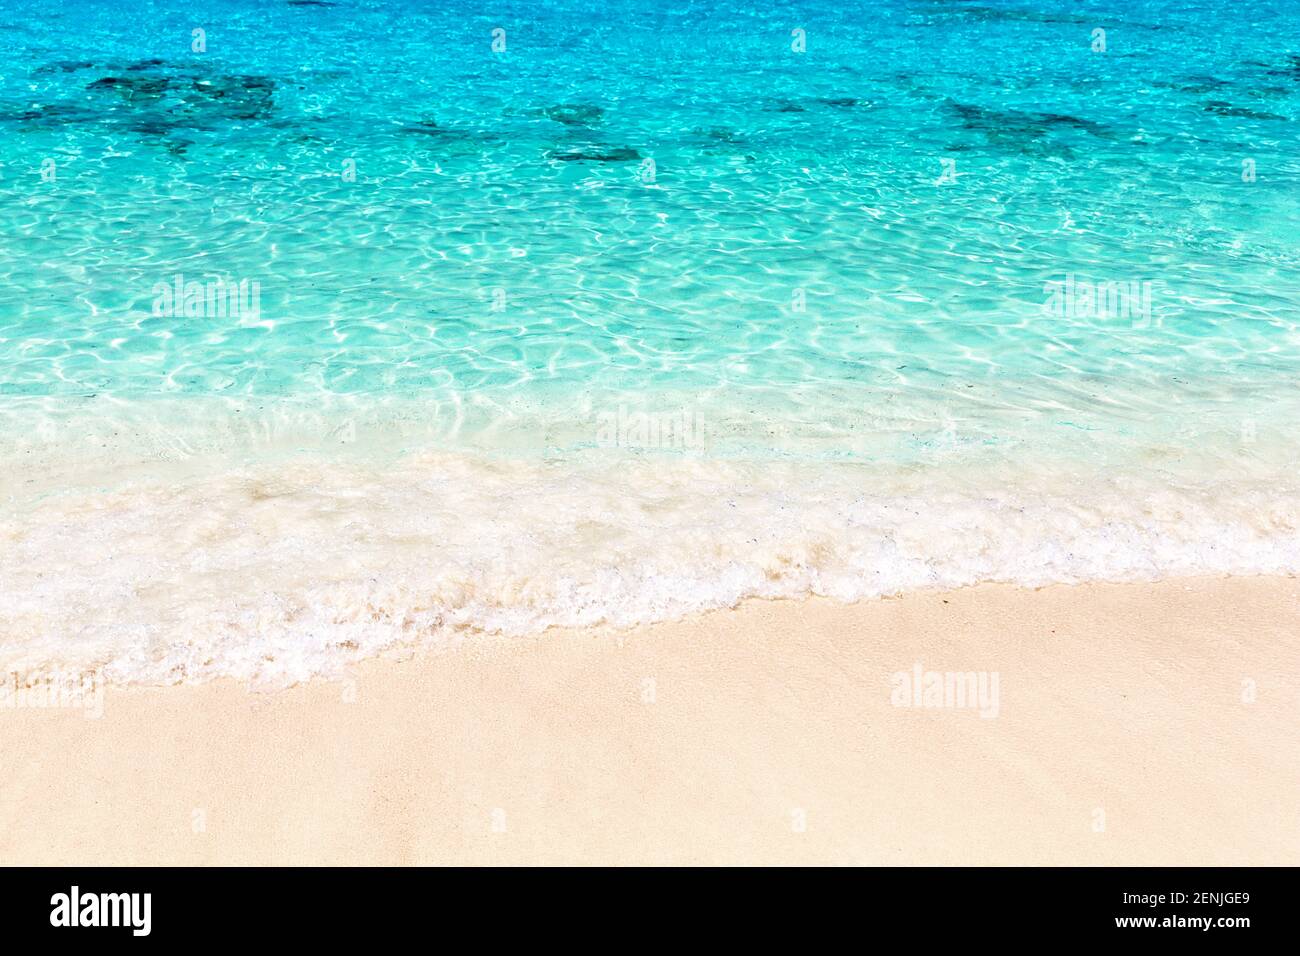 Vague de la mer sur la plage de sable à Punta Cana, République dominicaine. Paysage d'été tropical. Concept de vacances d'été à la plage. Banque D'Images